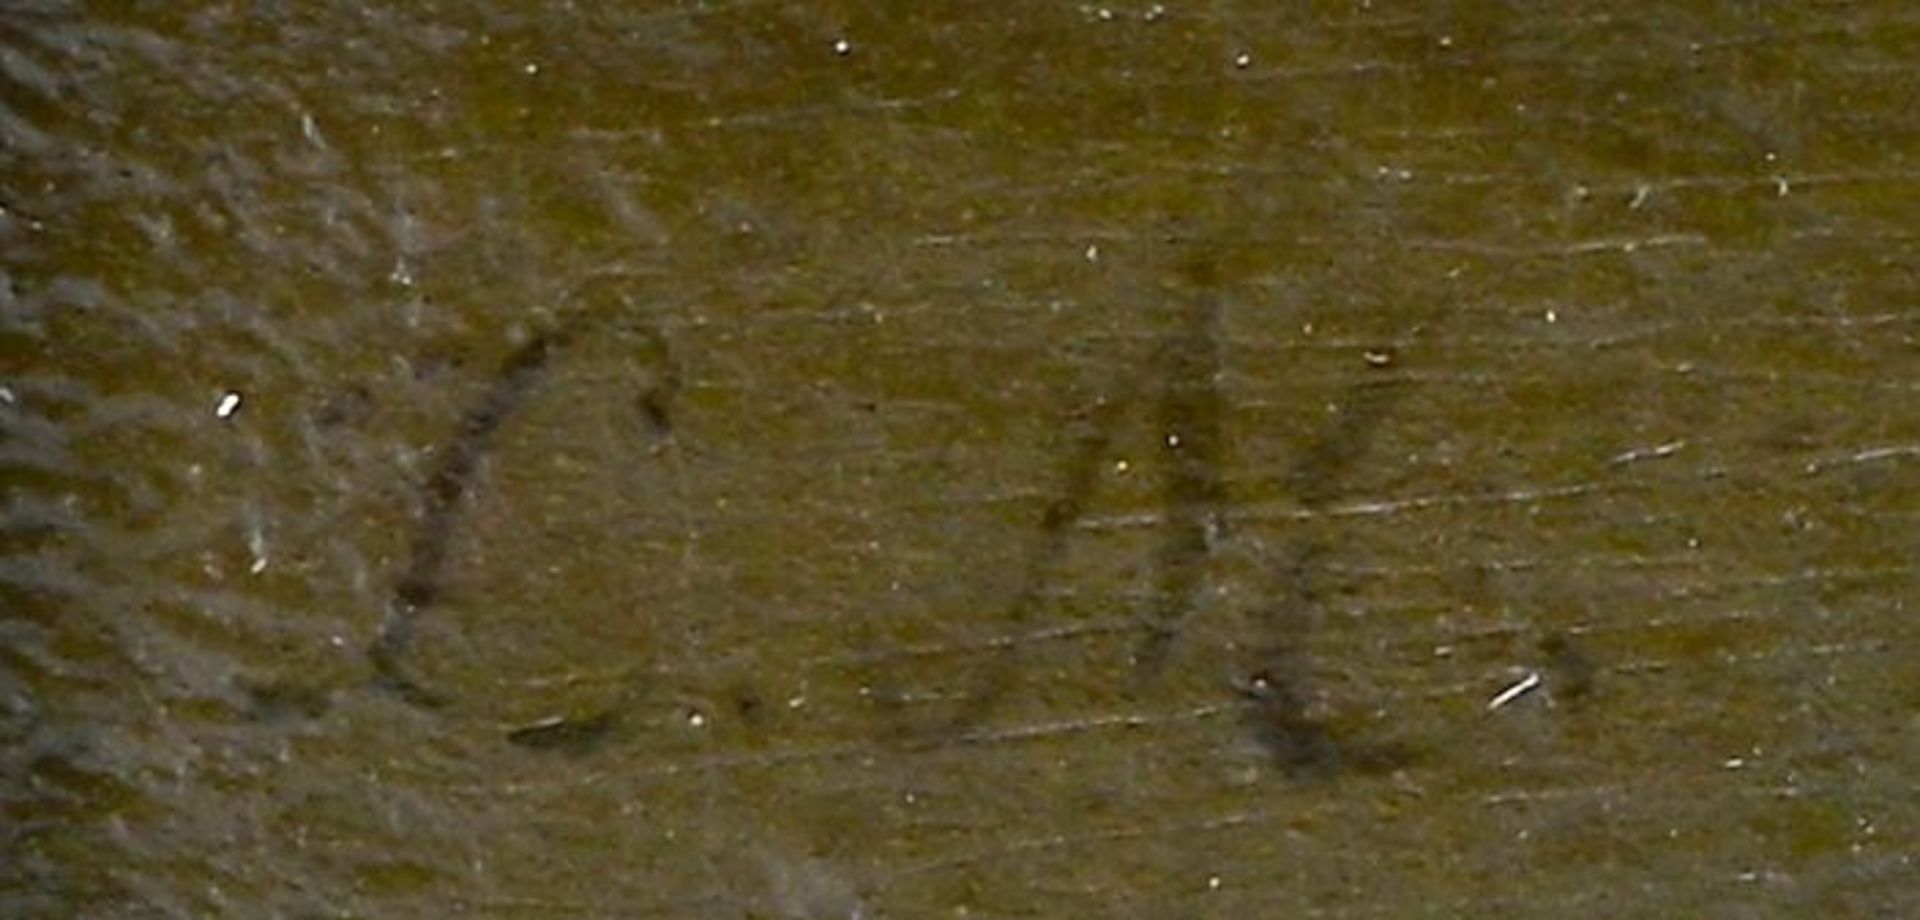 Kopie nach Watteau, Wahrsagerin / Copy after Watteau, Fortune teller - Image 3 of 5